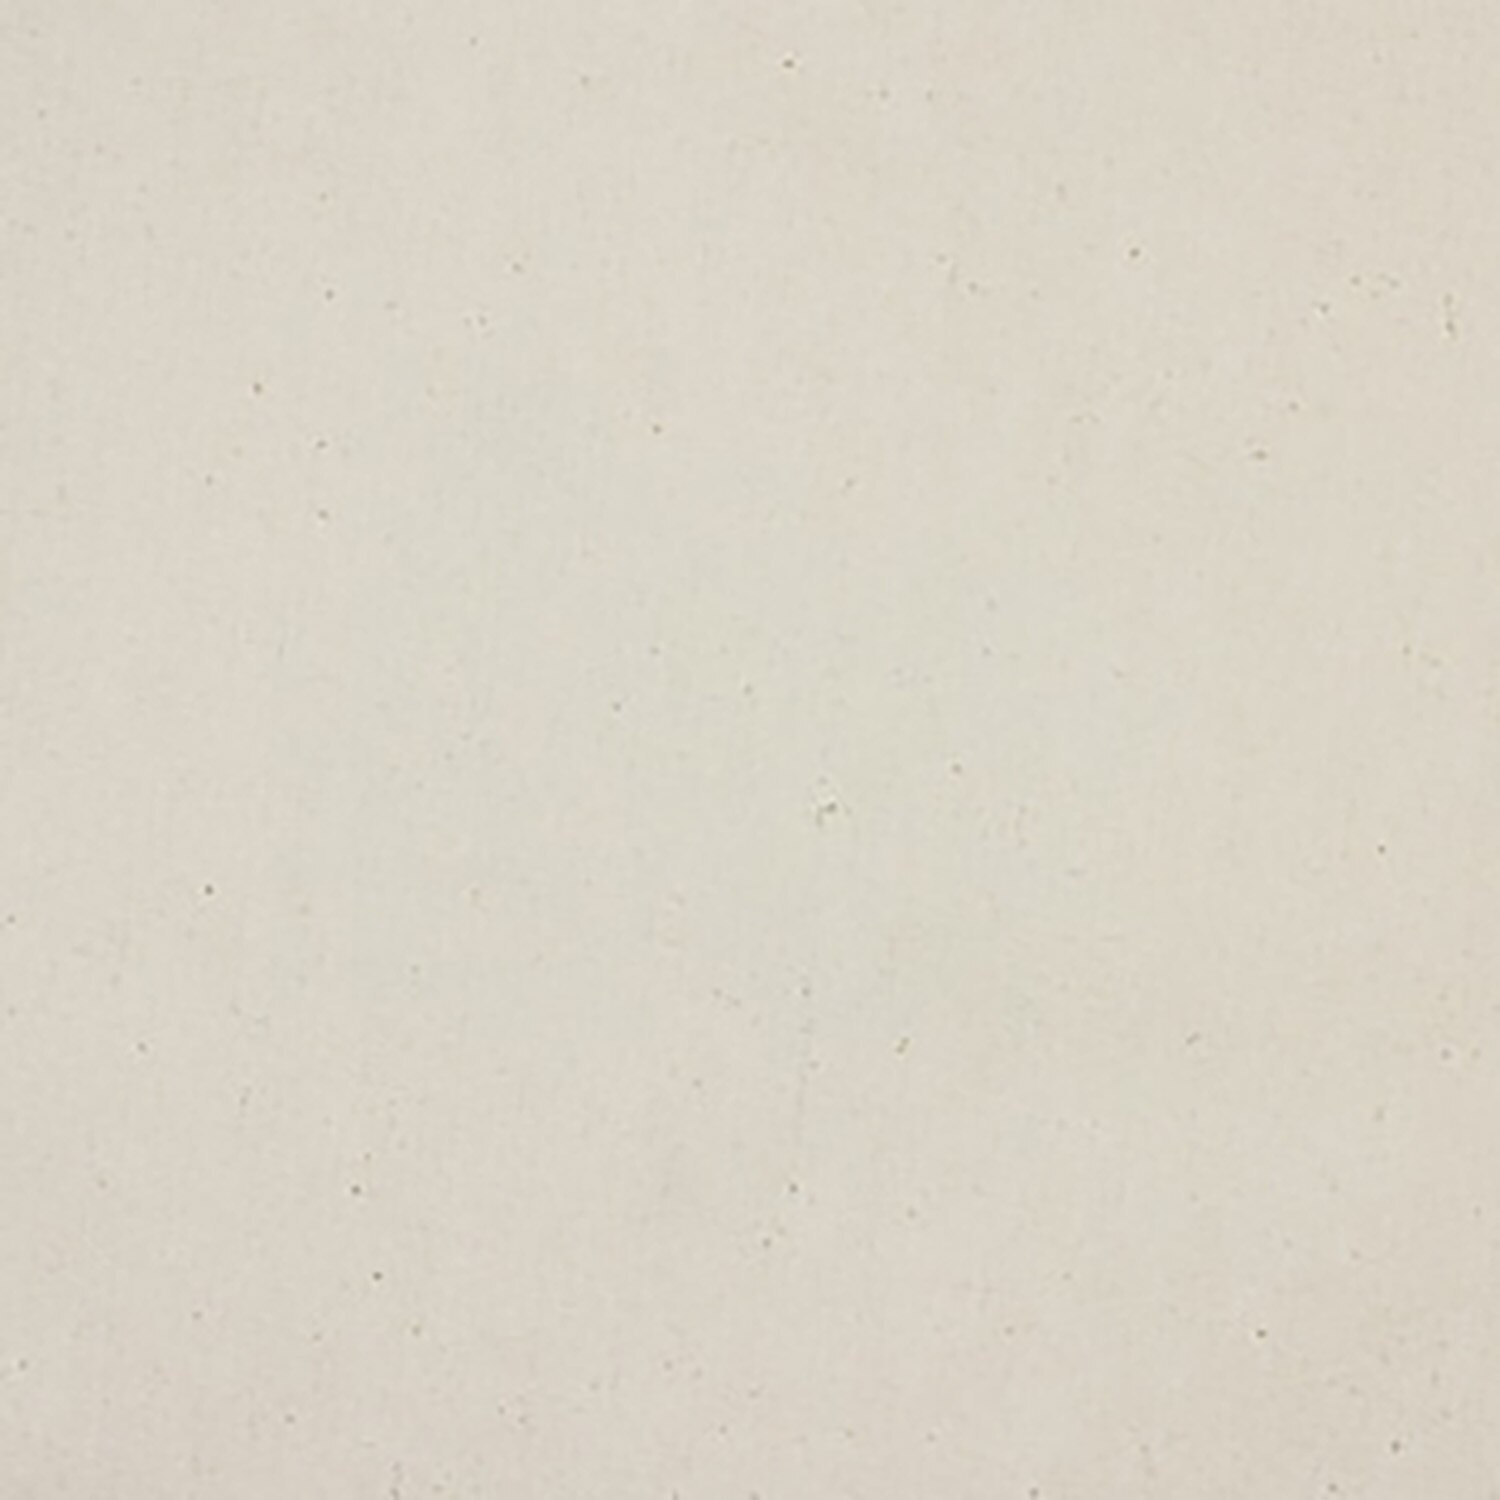 12/84 Cotton Duck, Artist Canvas, Unprimed